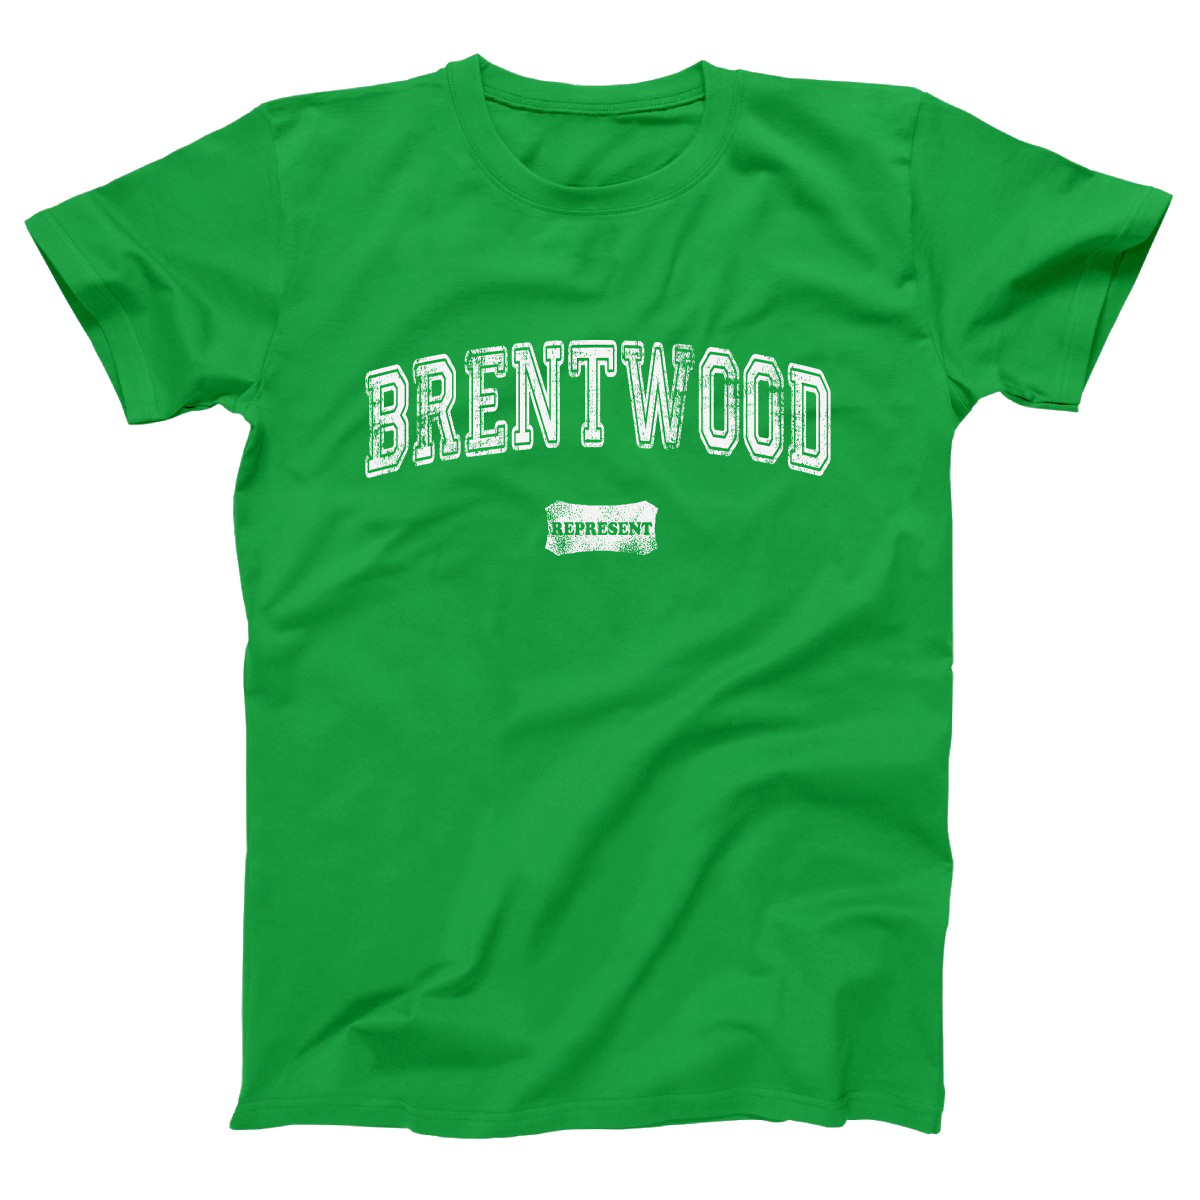 Brentwood Represent Women's T-shirt | Green